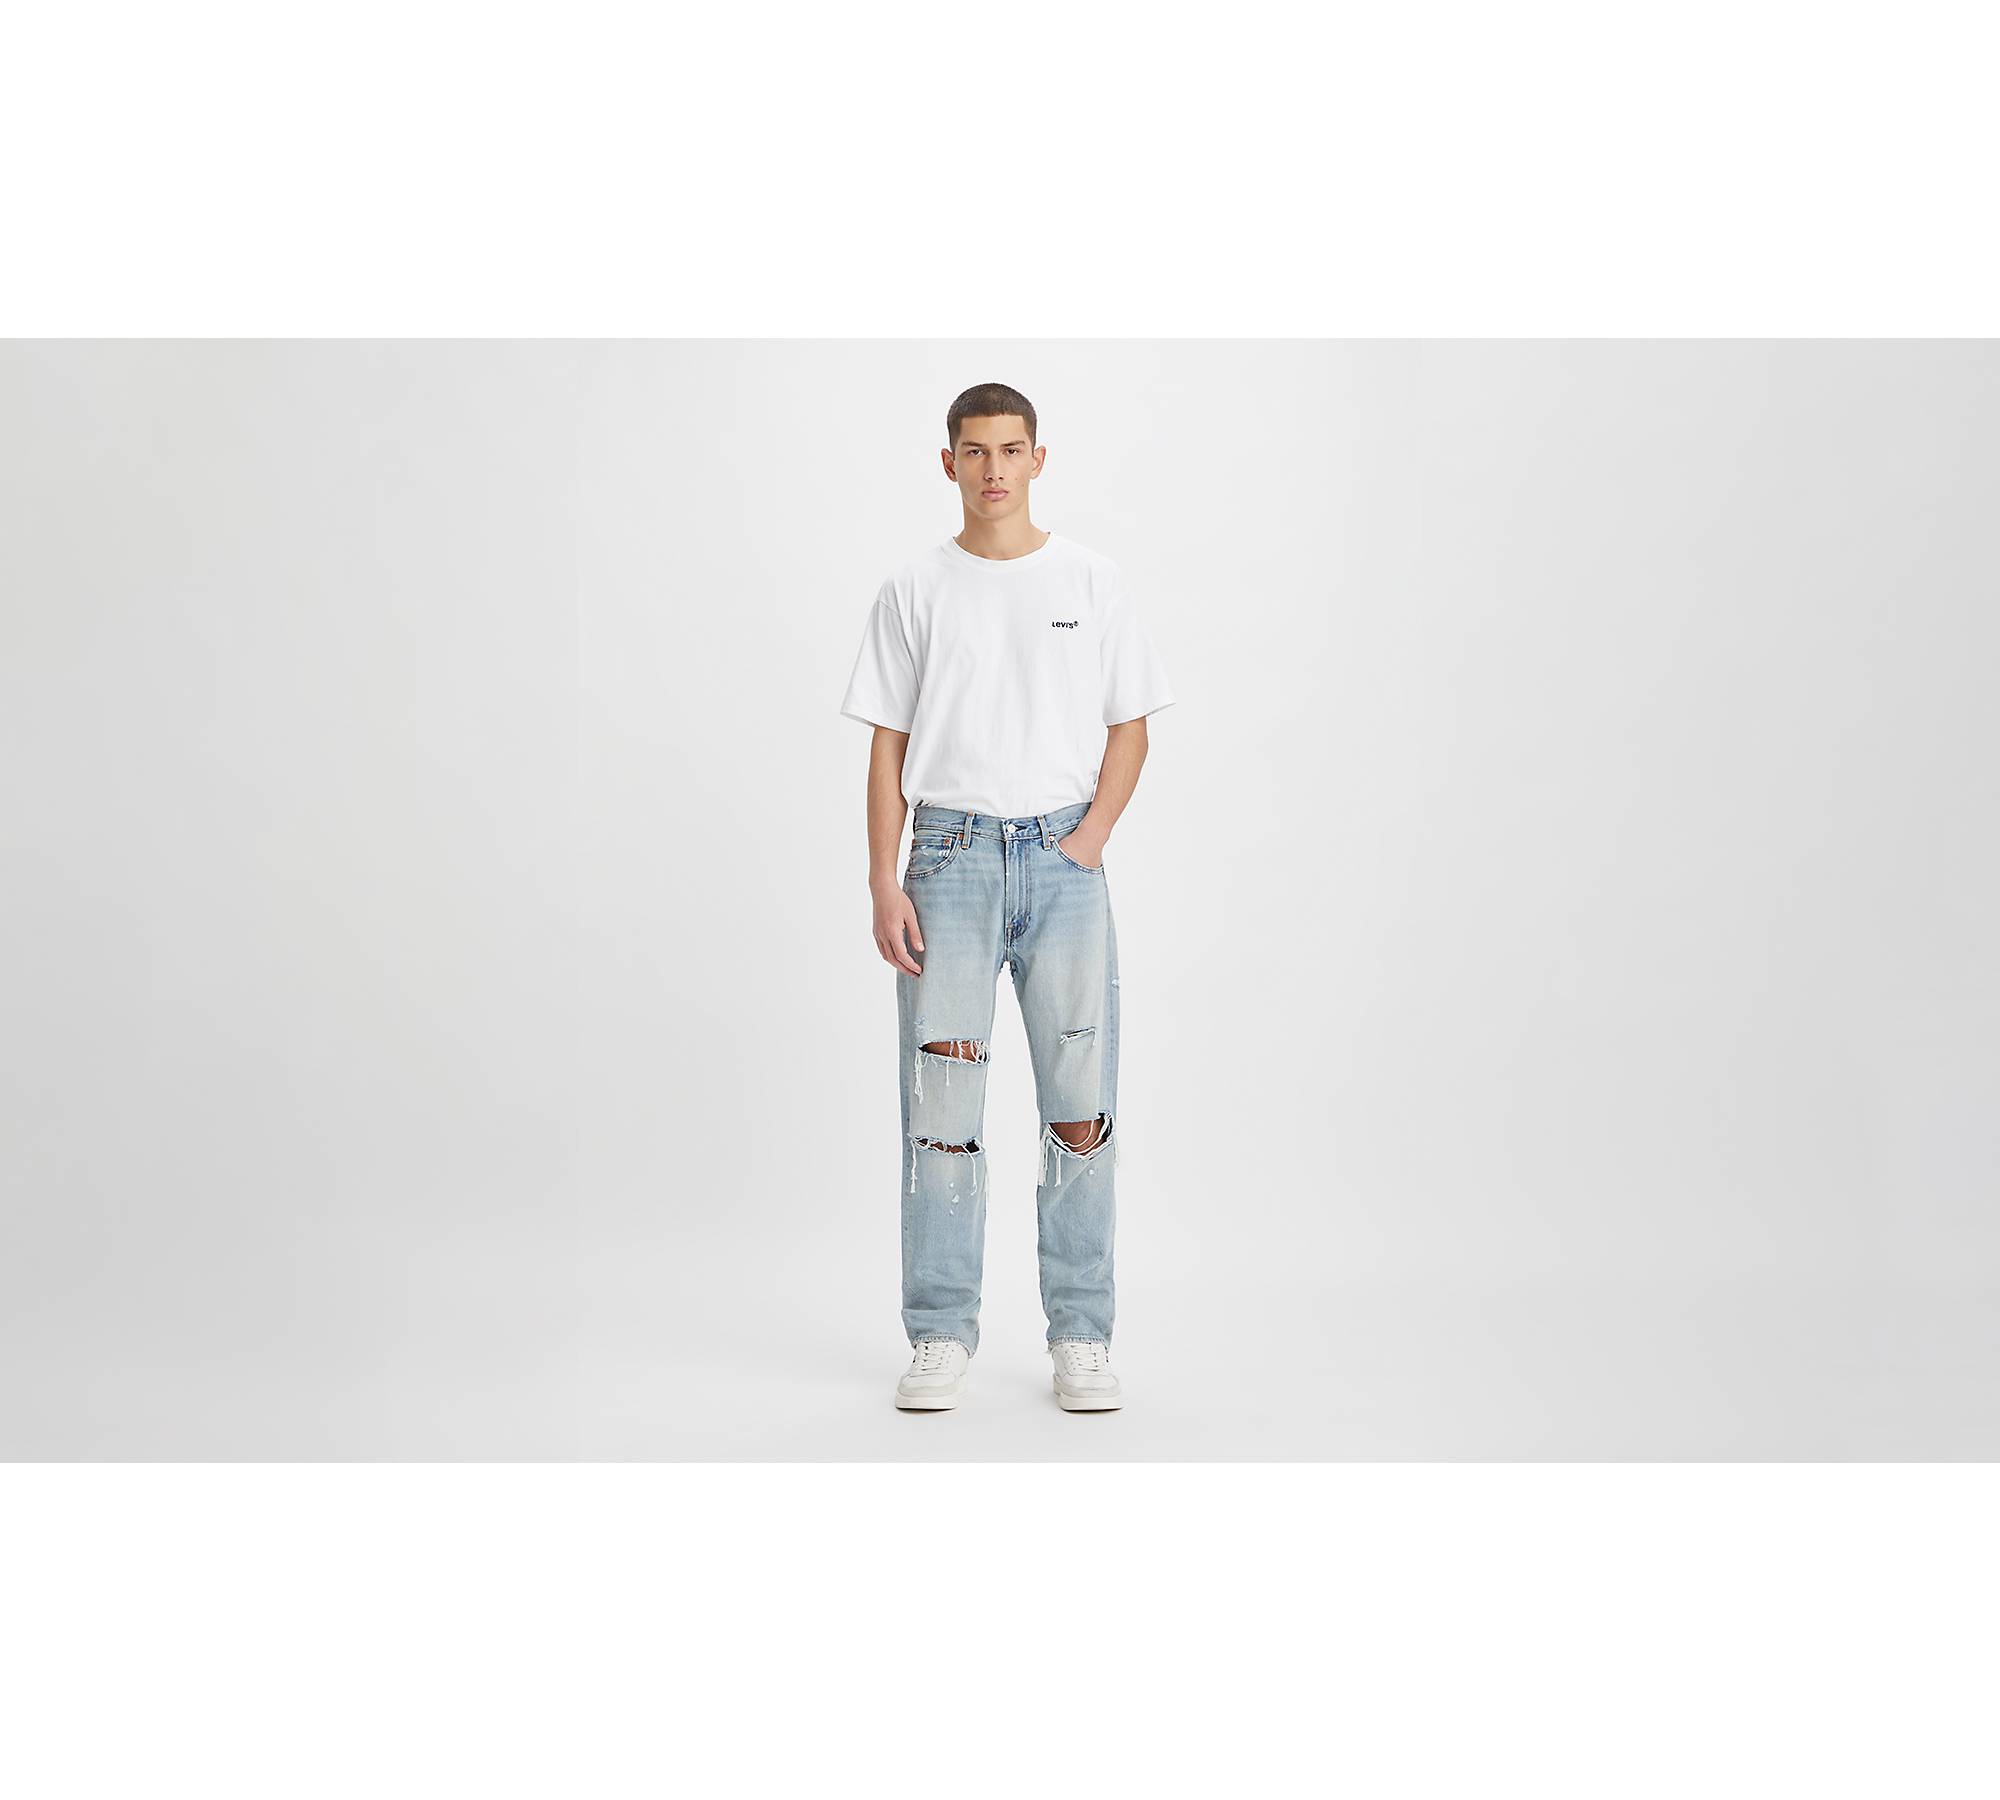 Kamel grad Resignation 551™ Z Authentic Straight Fit Men's Jeans - Light Wash | Levi's® US